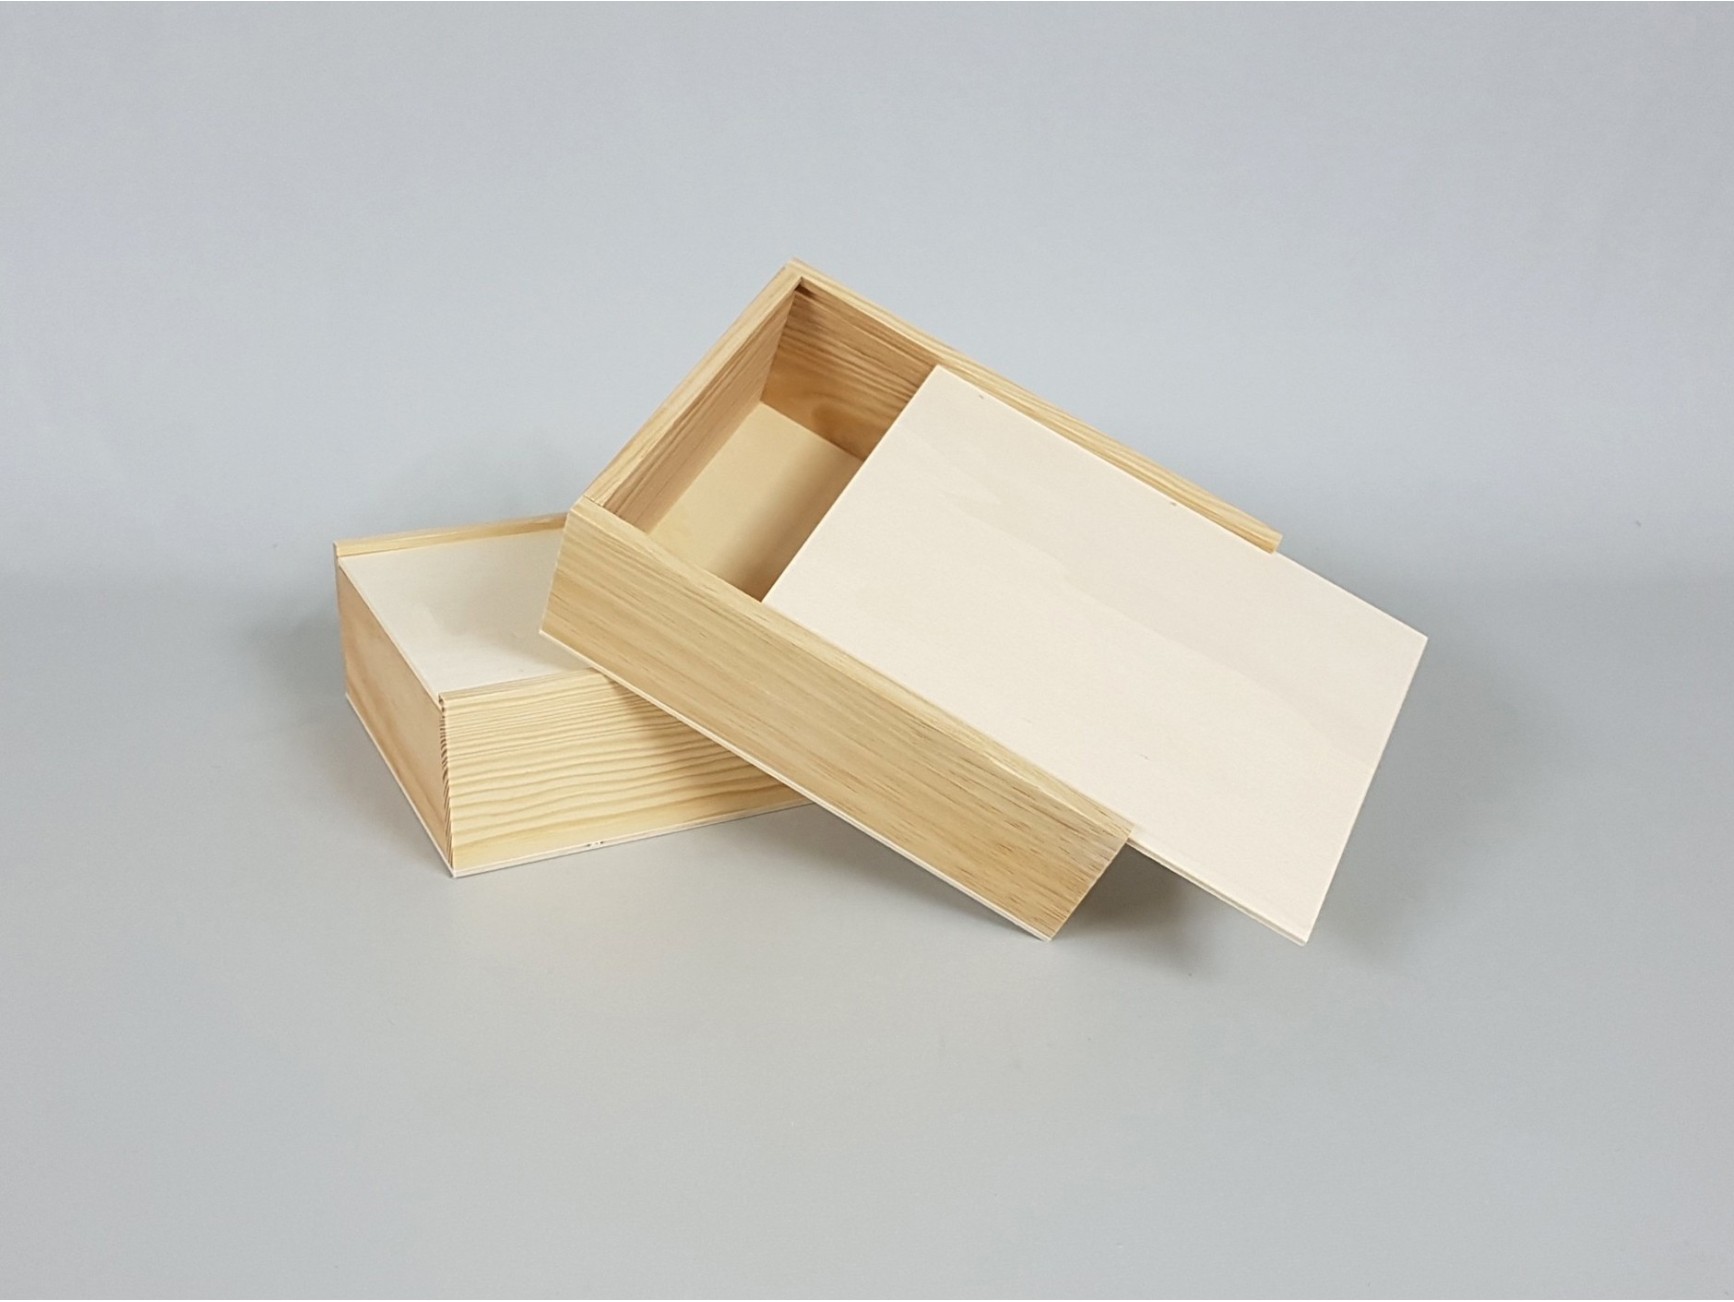 Natural Wooden Slide Box